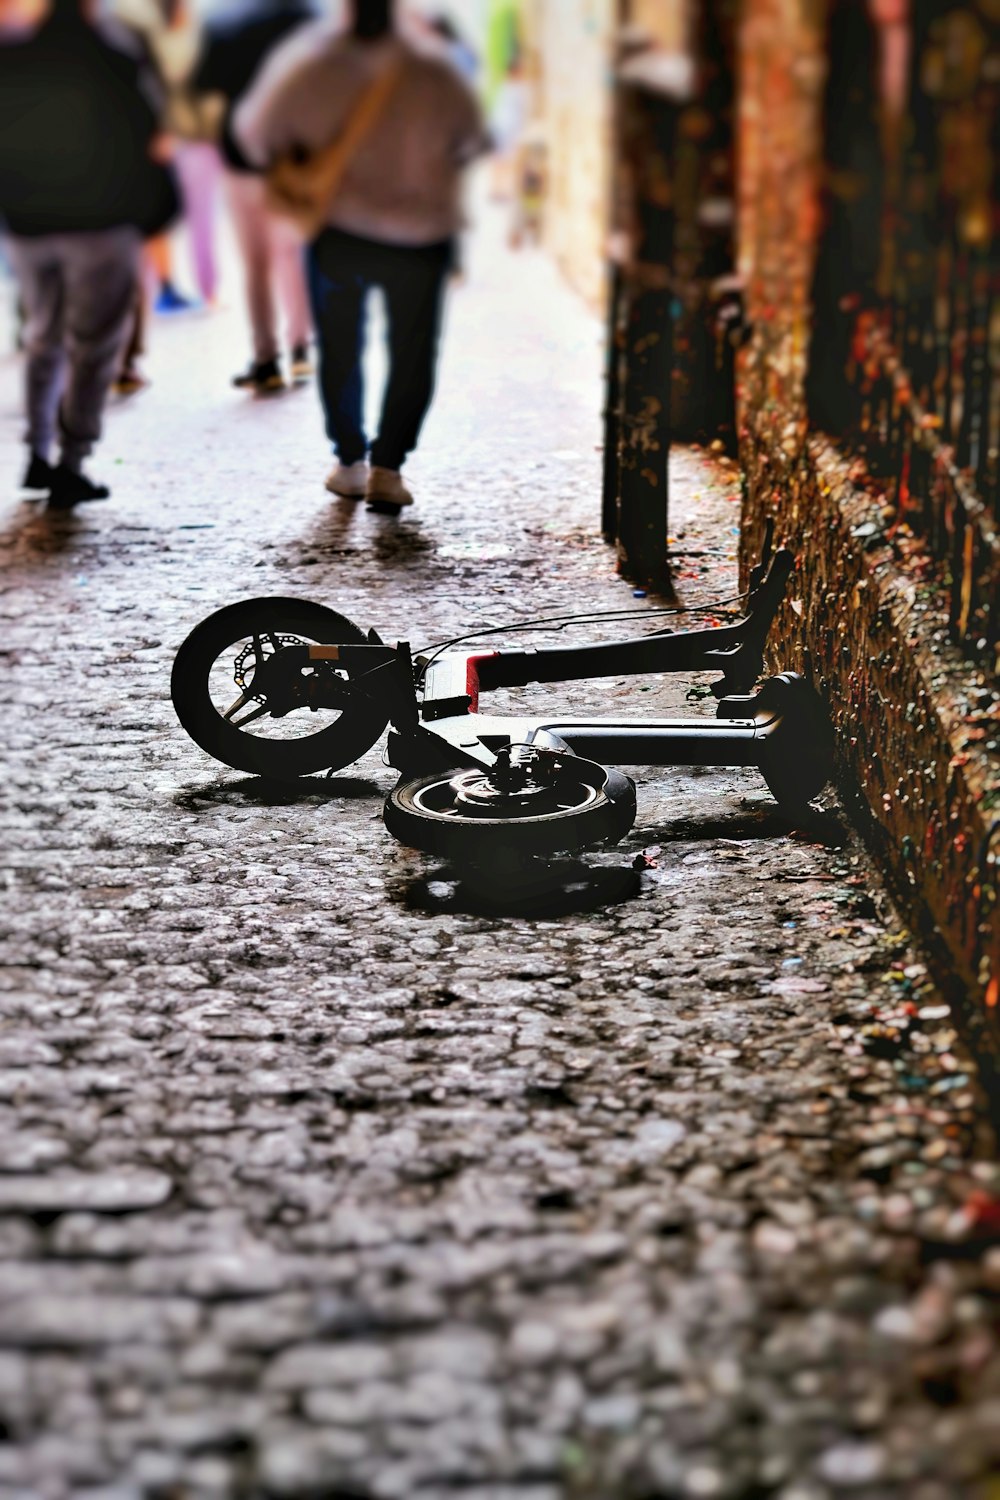 Un vélo cassé étendu sur le sol au milieu d’une rue